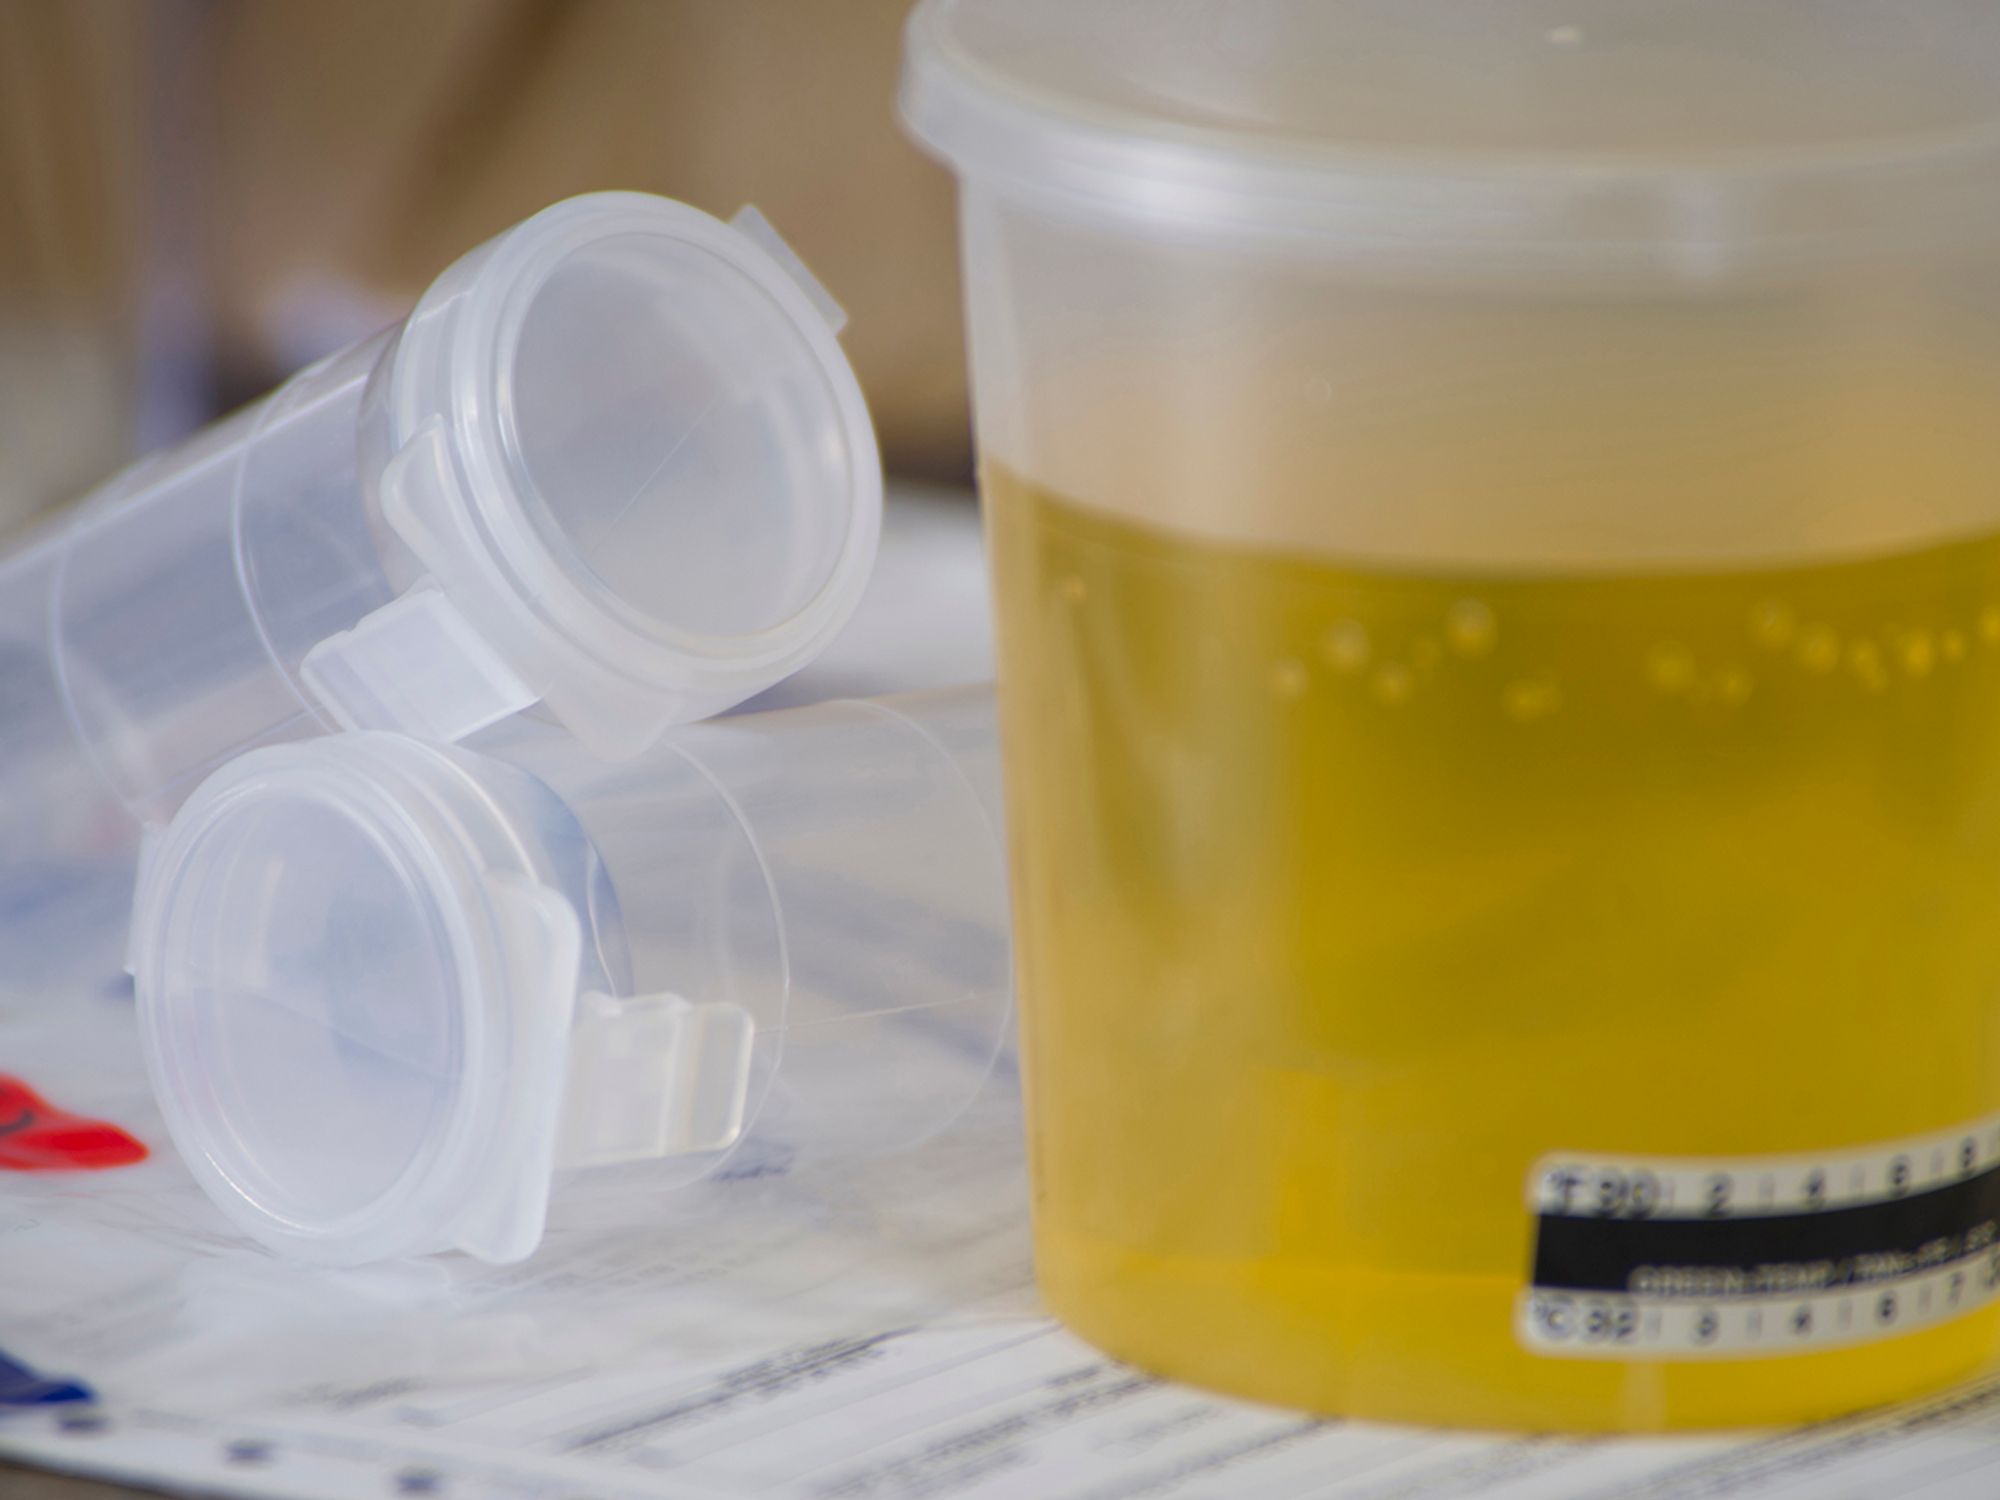 Handling dilute urine specimens